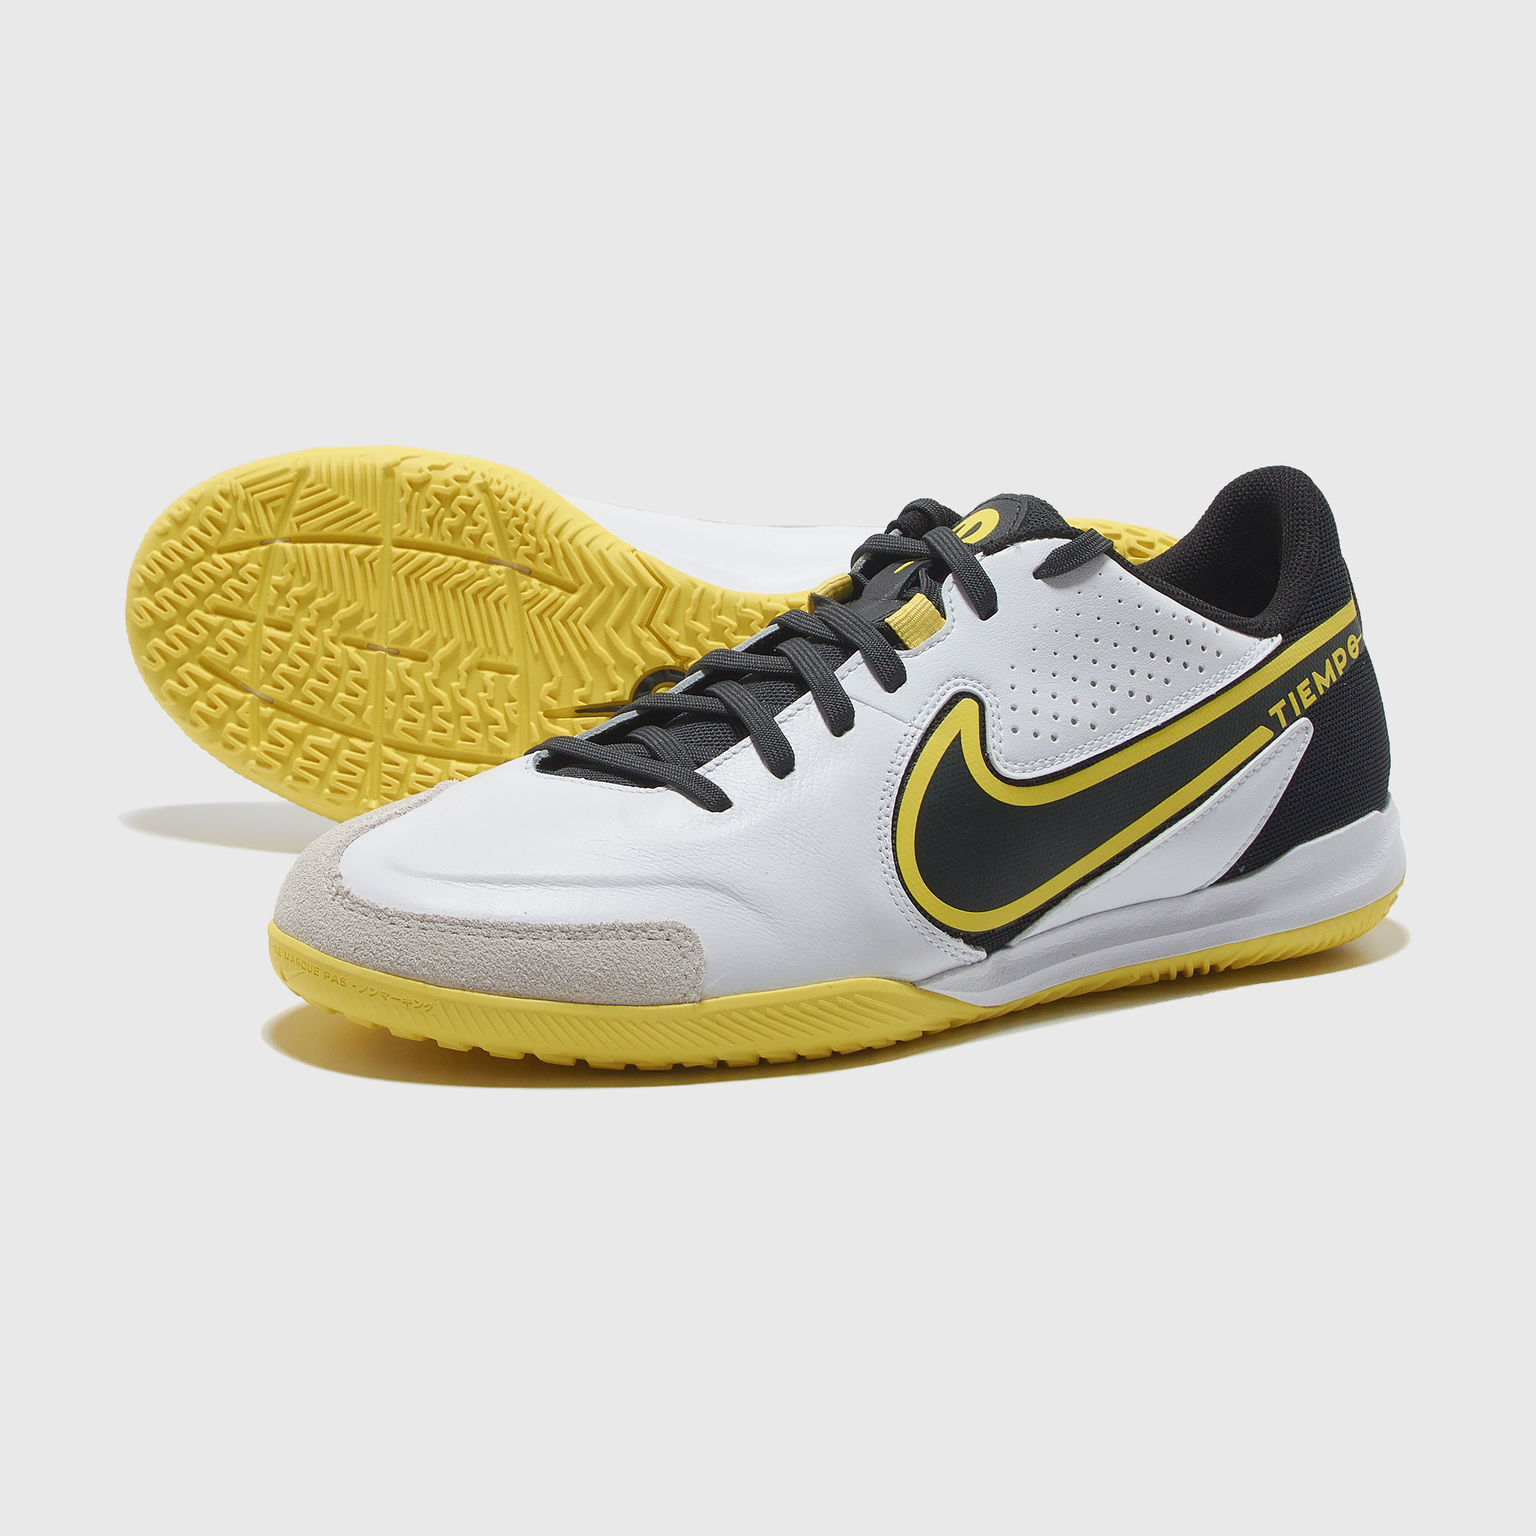 Футзалки Nike Tiempo 9 Academy DA1190-107 – купить в интернет магазине цена, фото